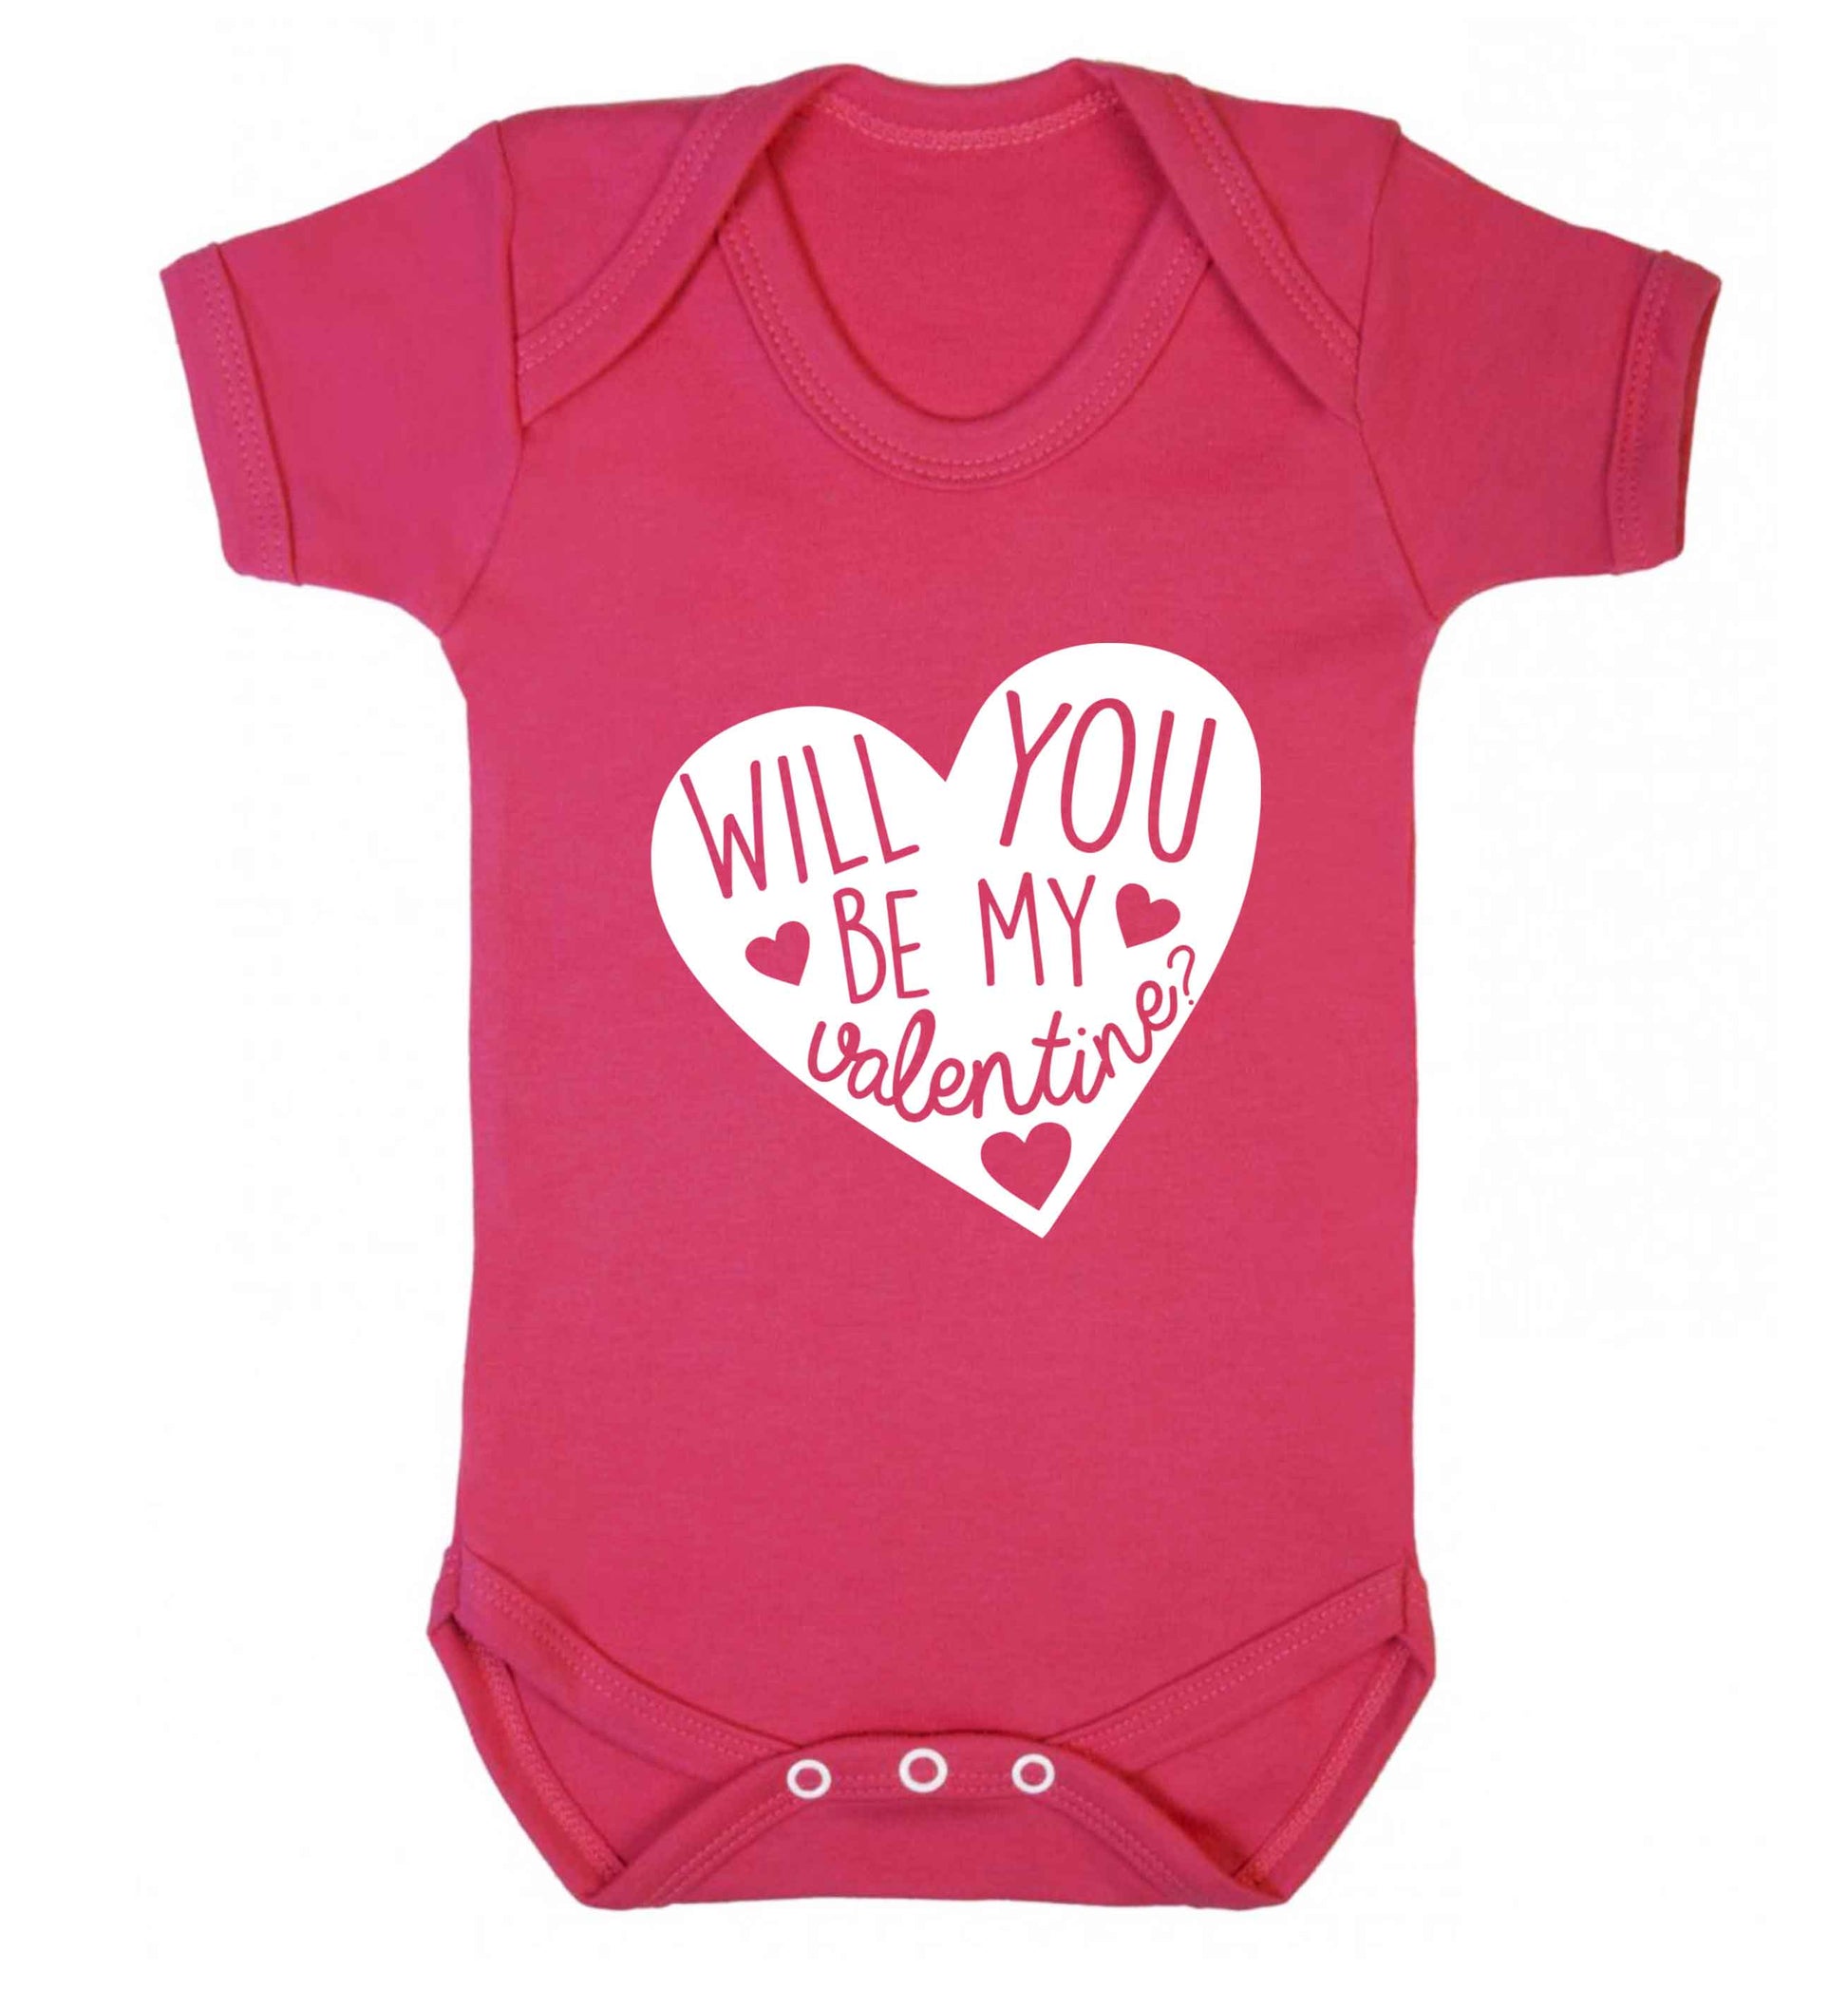 Will you be my valentine? baby vest dark pink 18-24 months